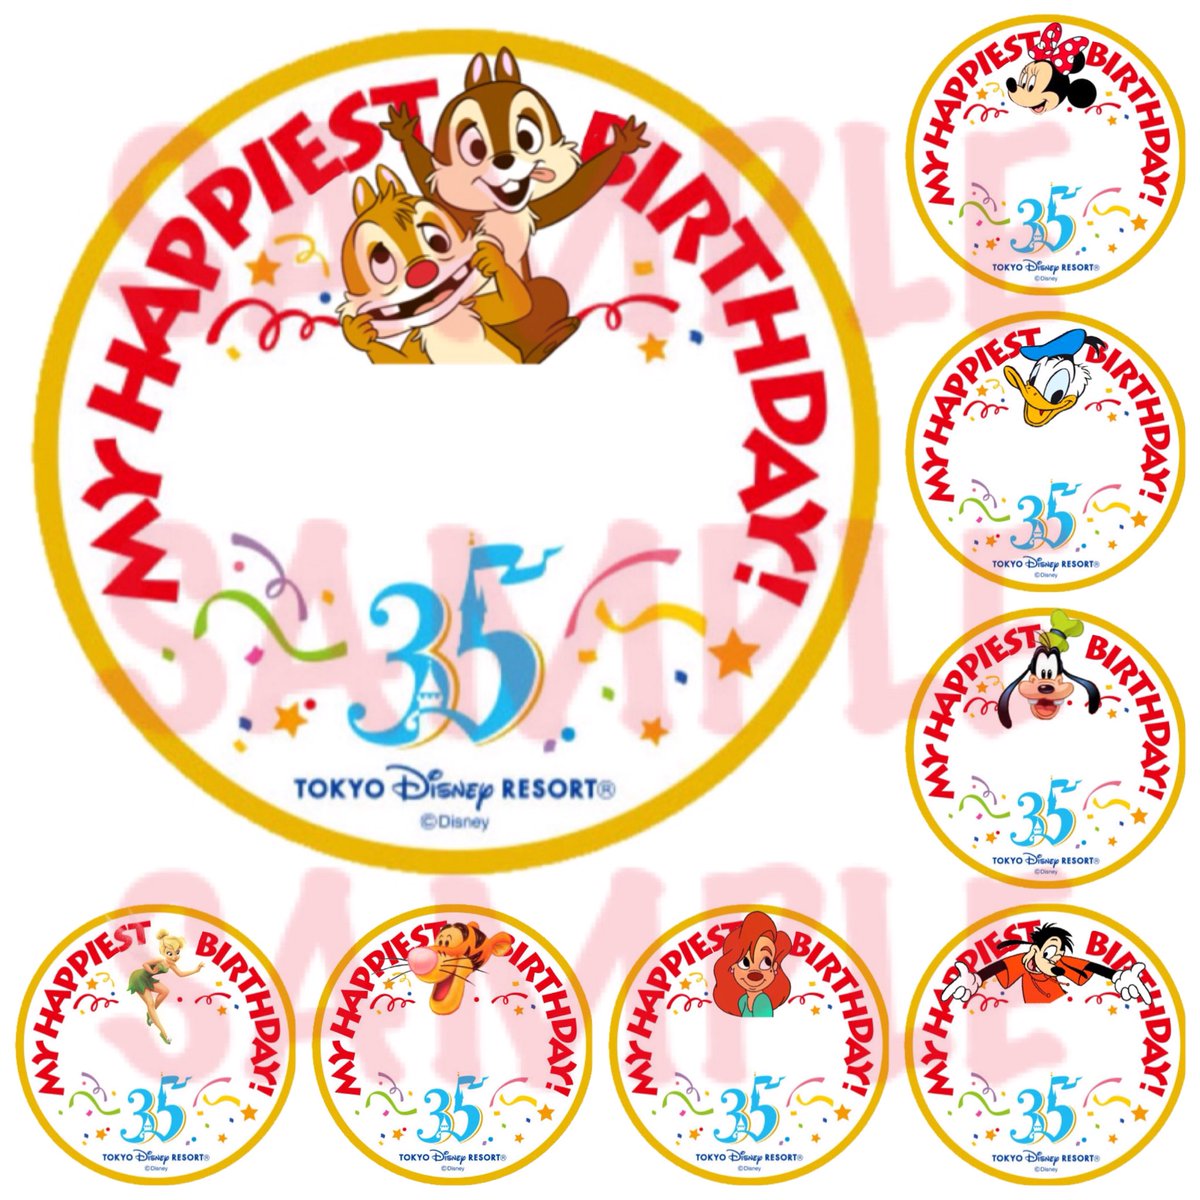 Twitter 上的 Kay 自分の誕生日まであと3日だから お遊び半分でいっぱい作った 35周年バージョン ディズニー バースデーシール Disney Birthday Stickers T Co Rahspjuws8 Twitter